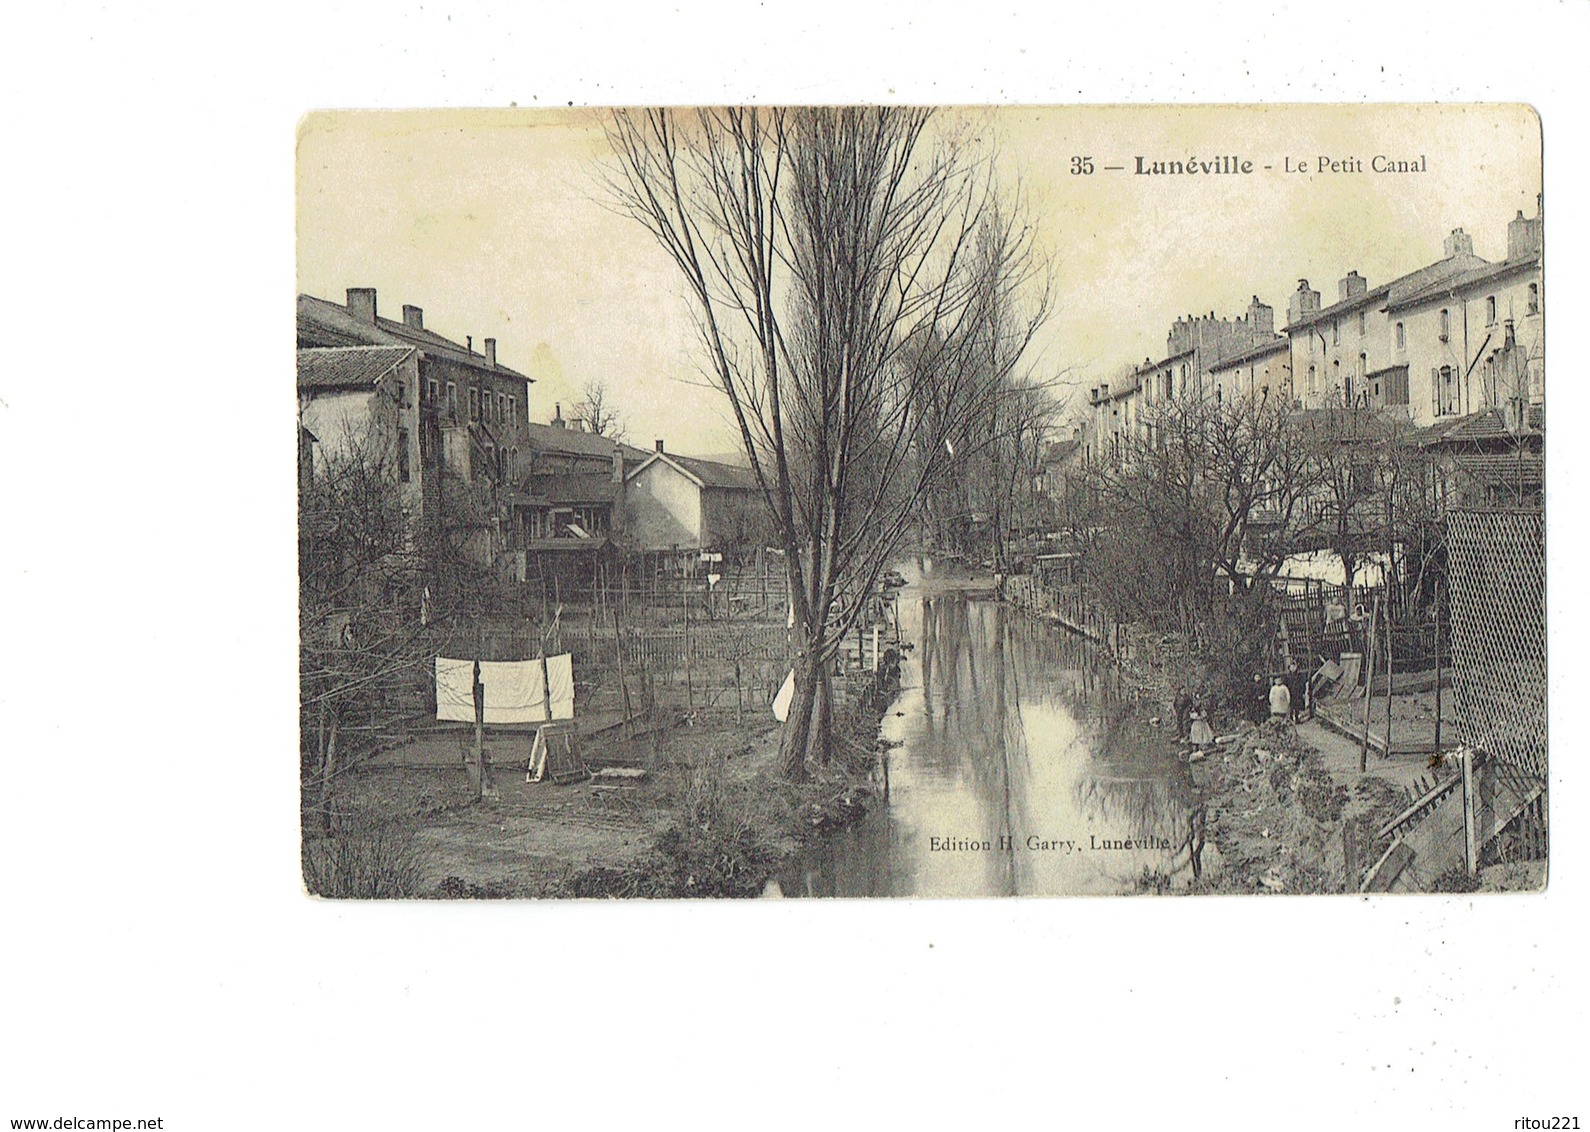 Cpa - 54 - LUNEVILLE - Le Petit Canal - Edition H. Garry N° 35 - - Luneville